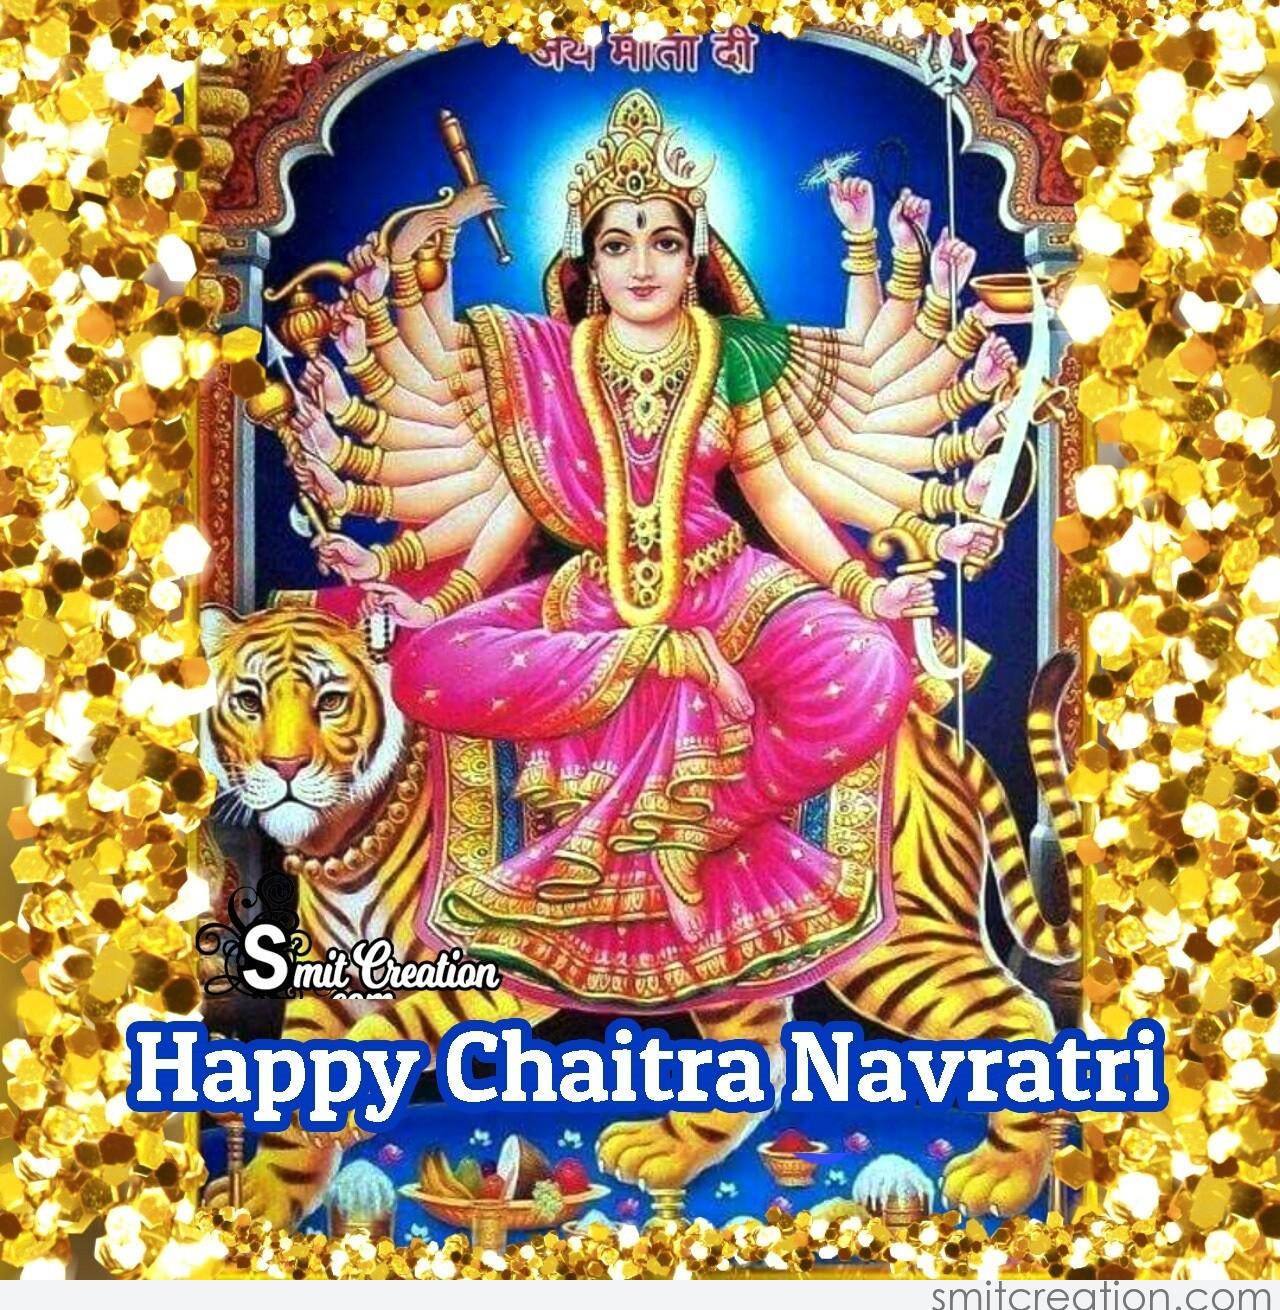 Happy Chaitra Navratri Greeting - SmitCreation.com